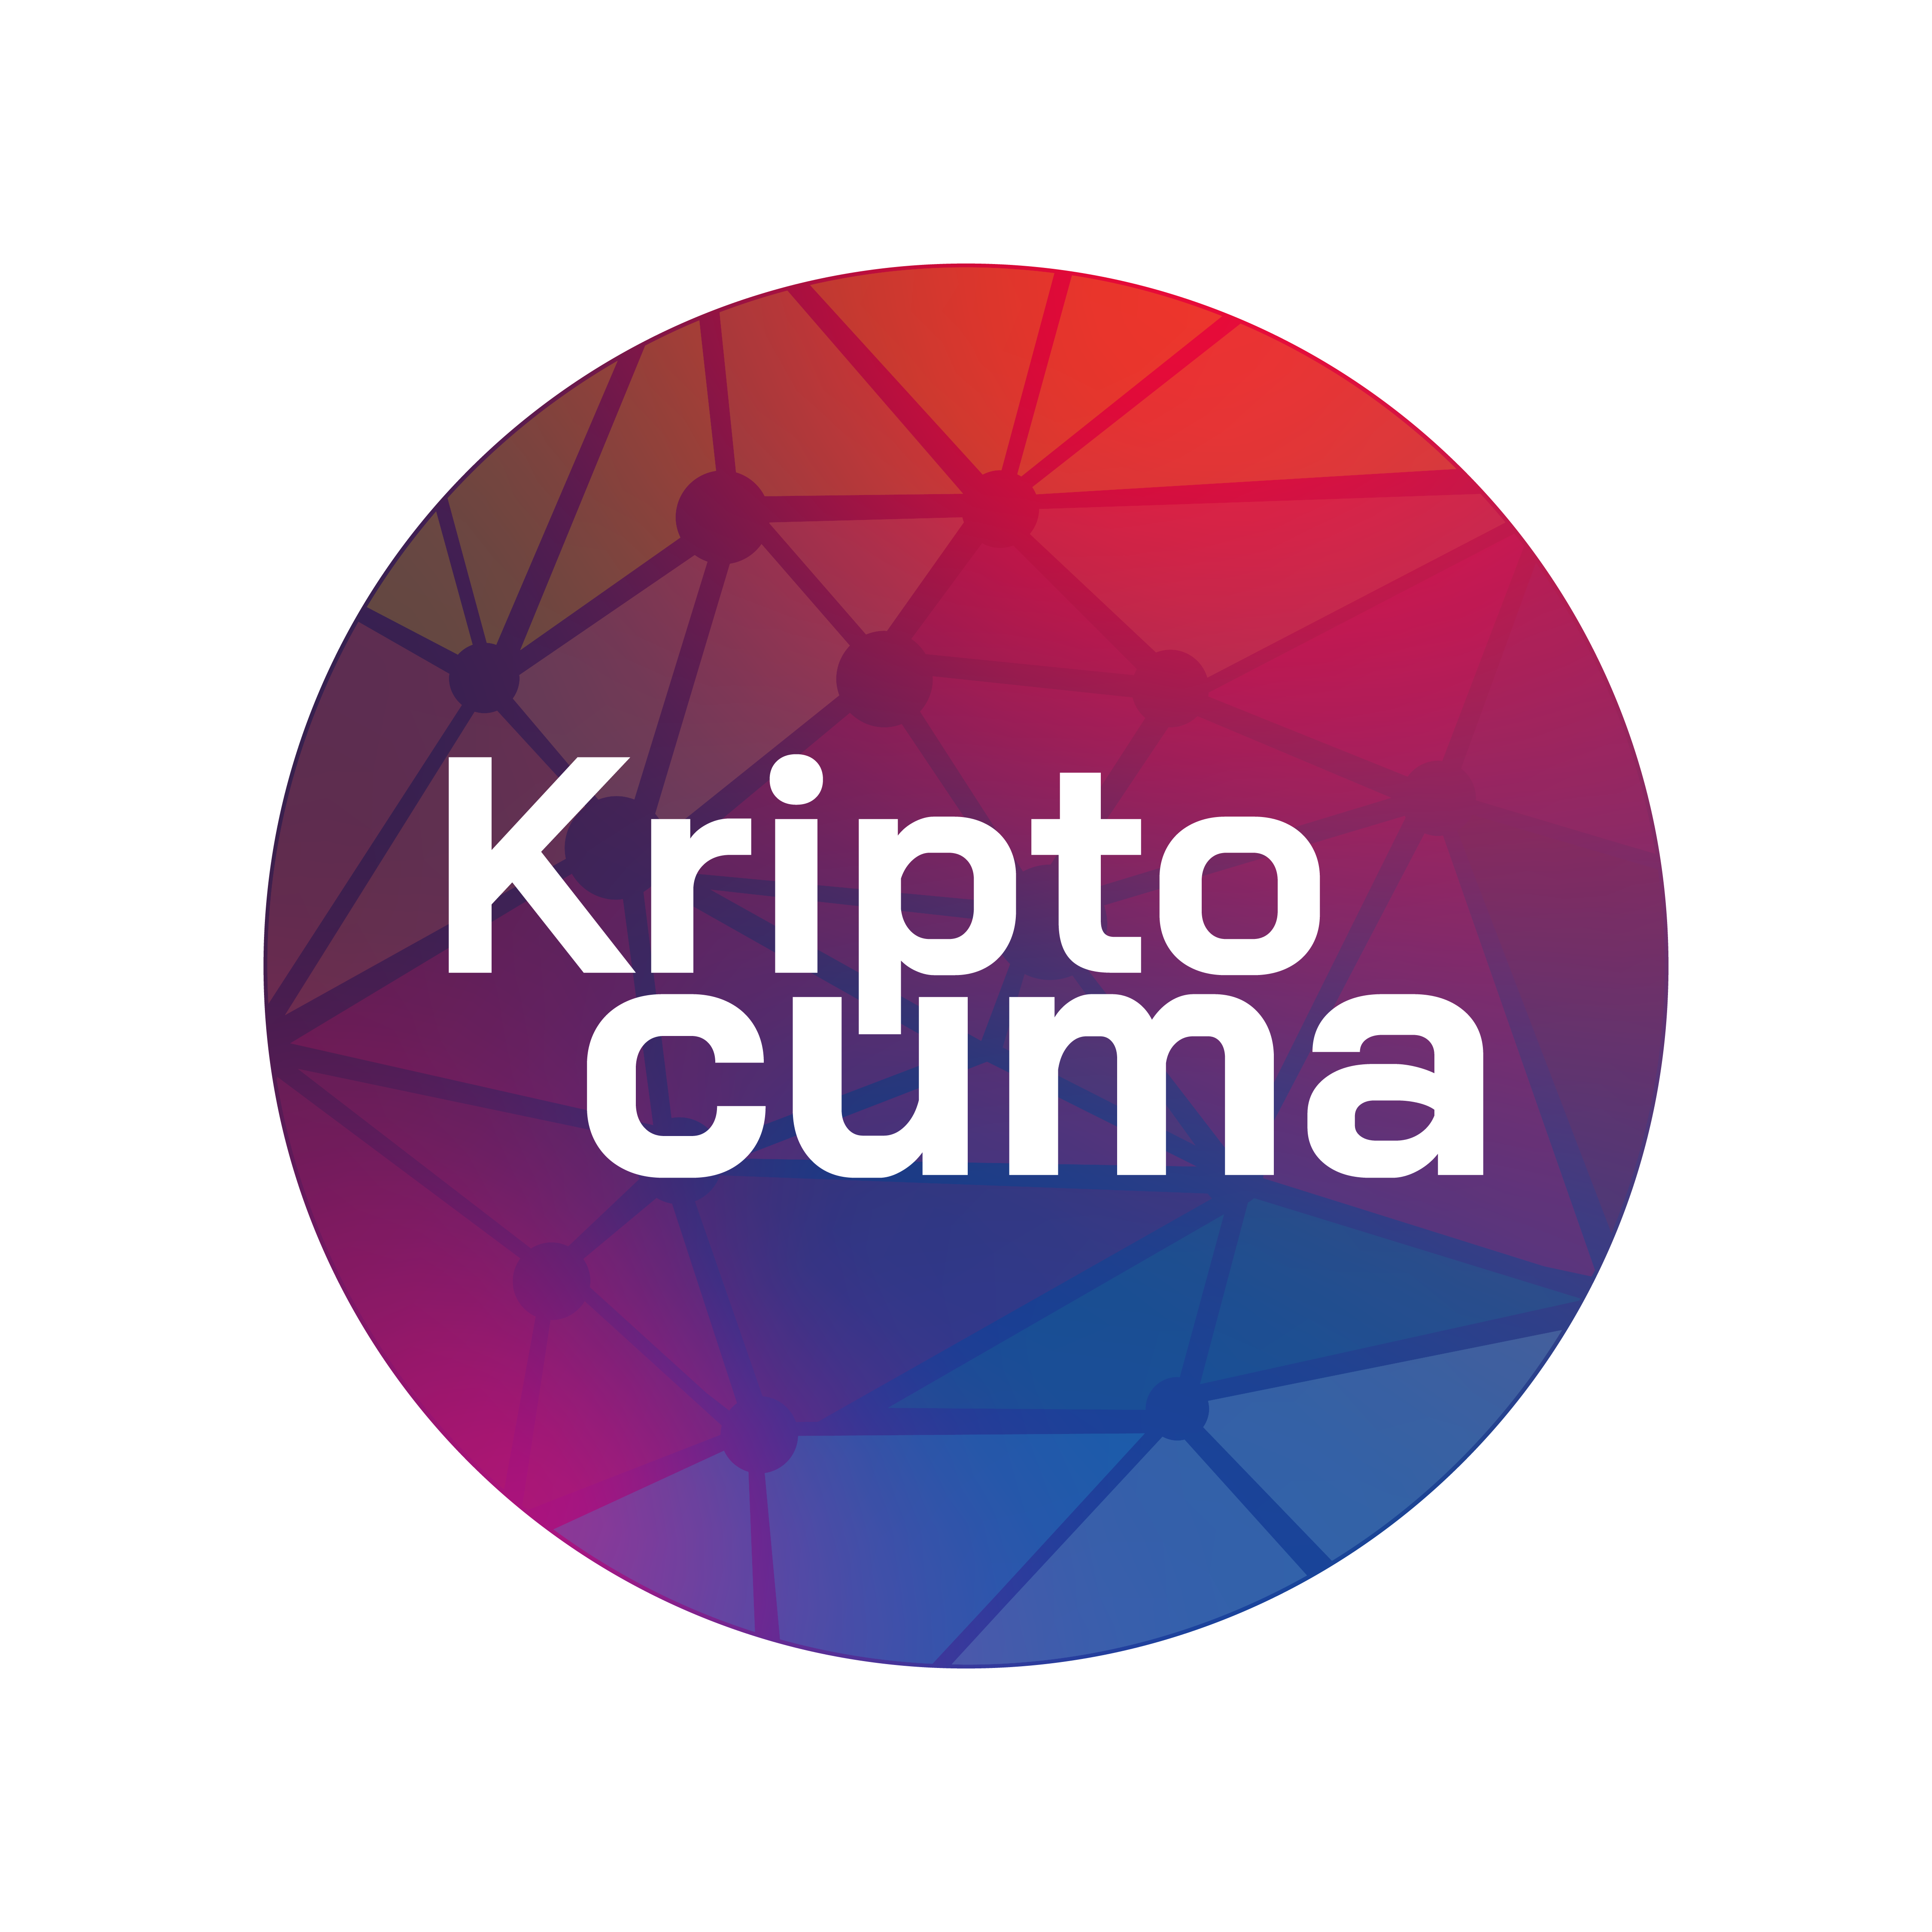 KriptoCuma / #CryptoFriday By Altcointurk